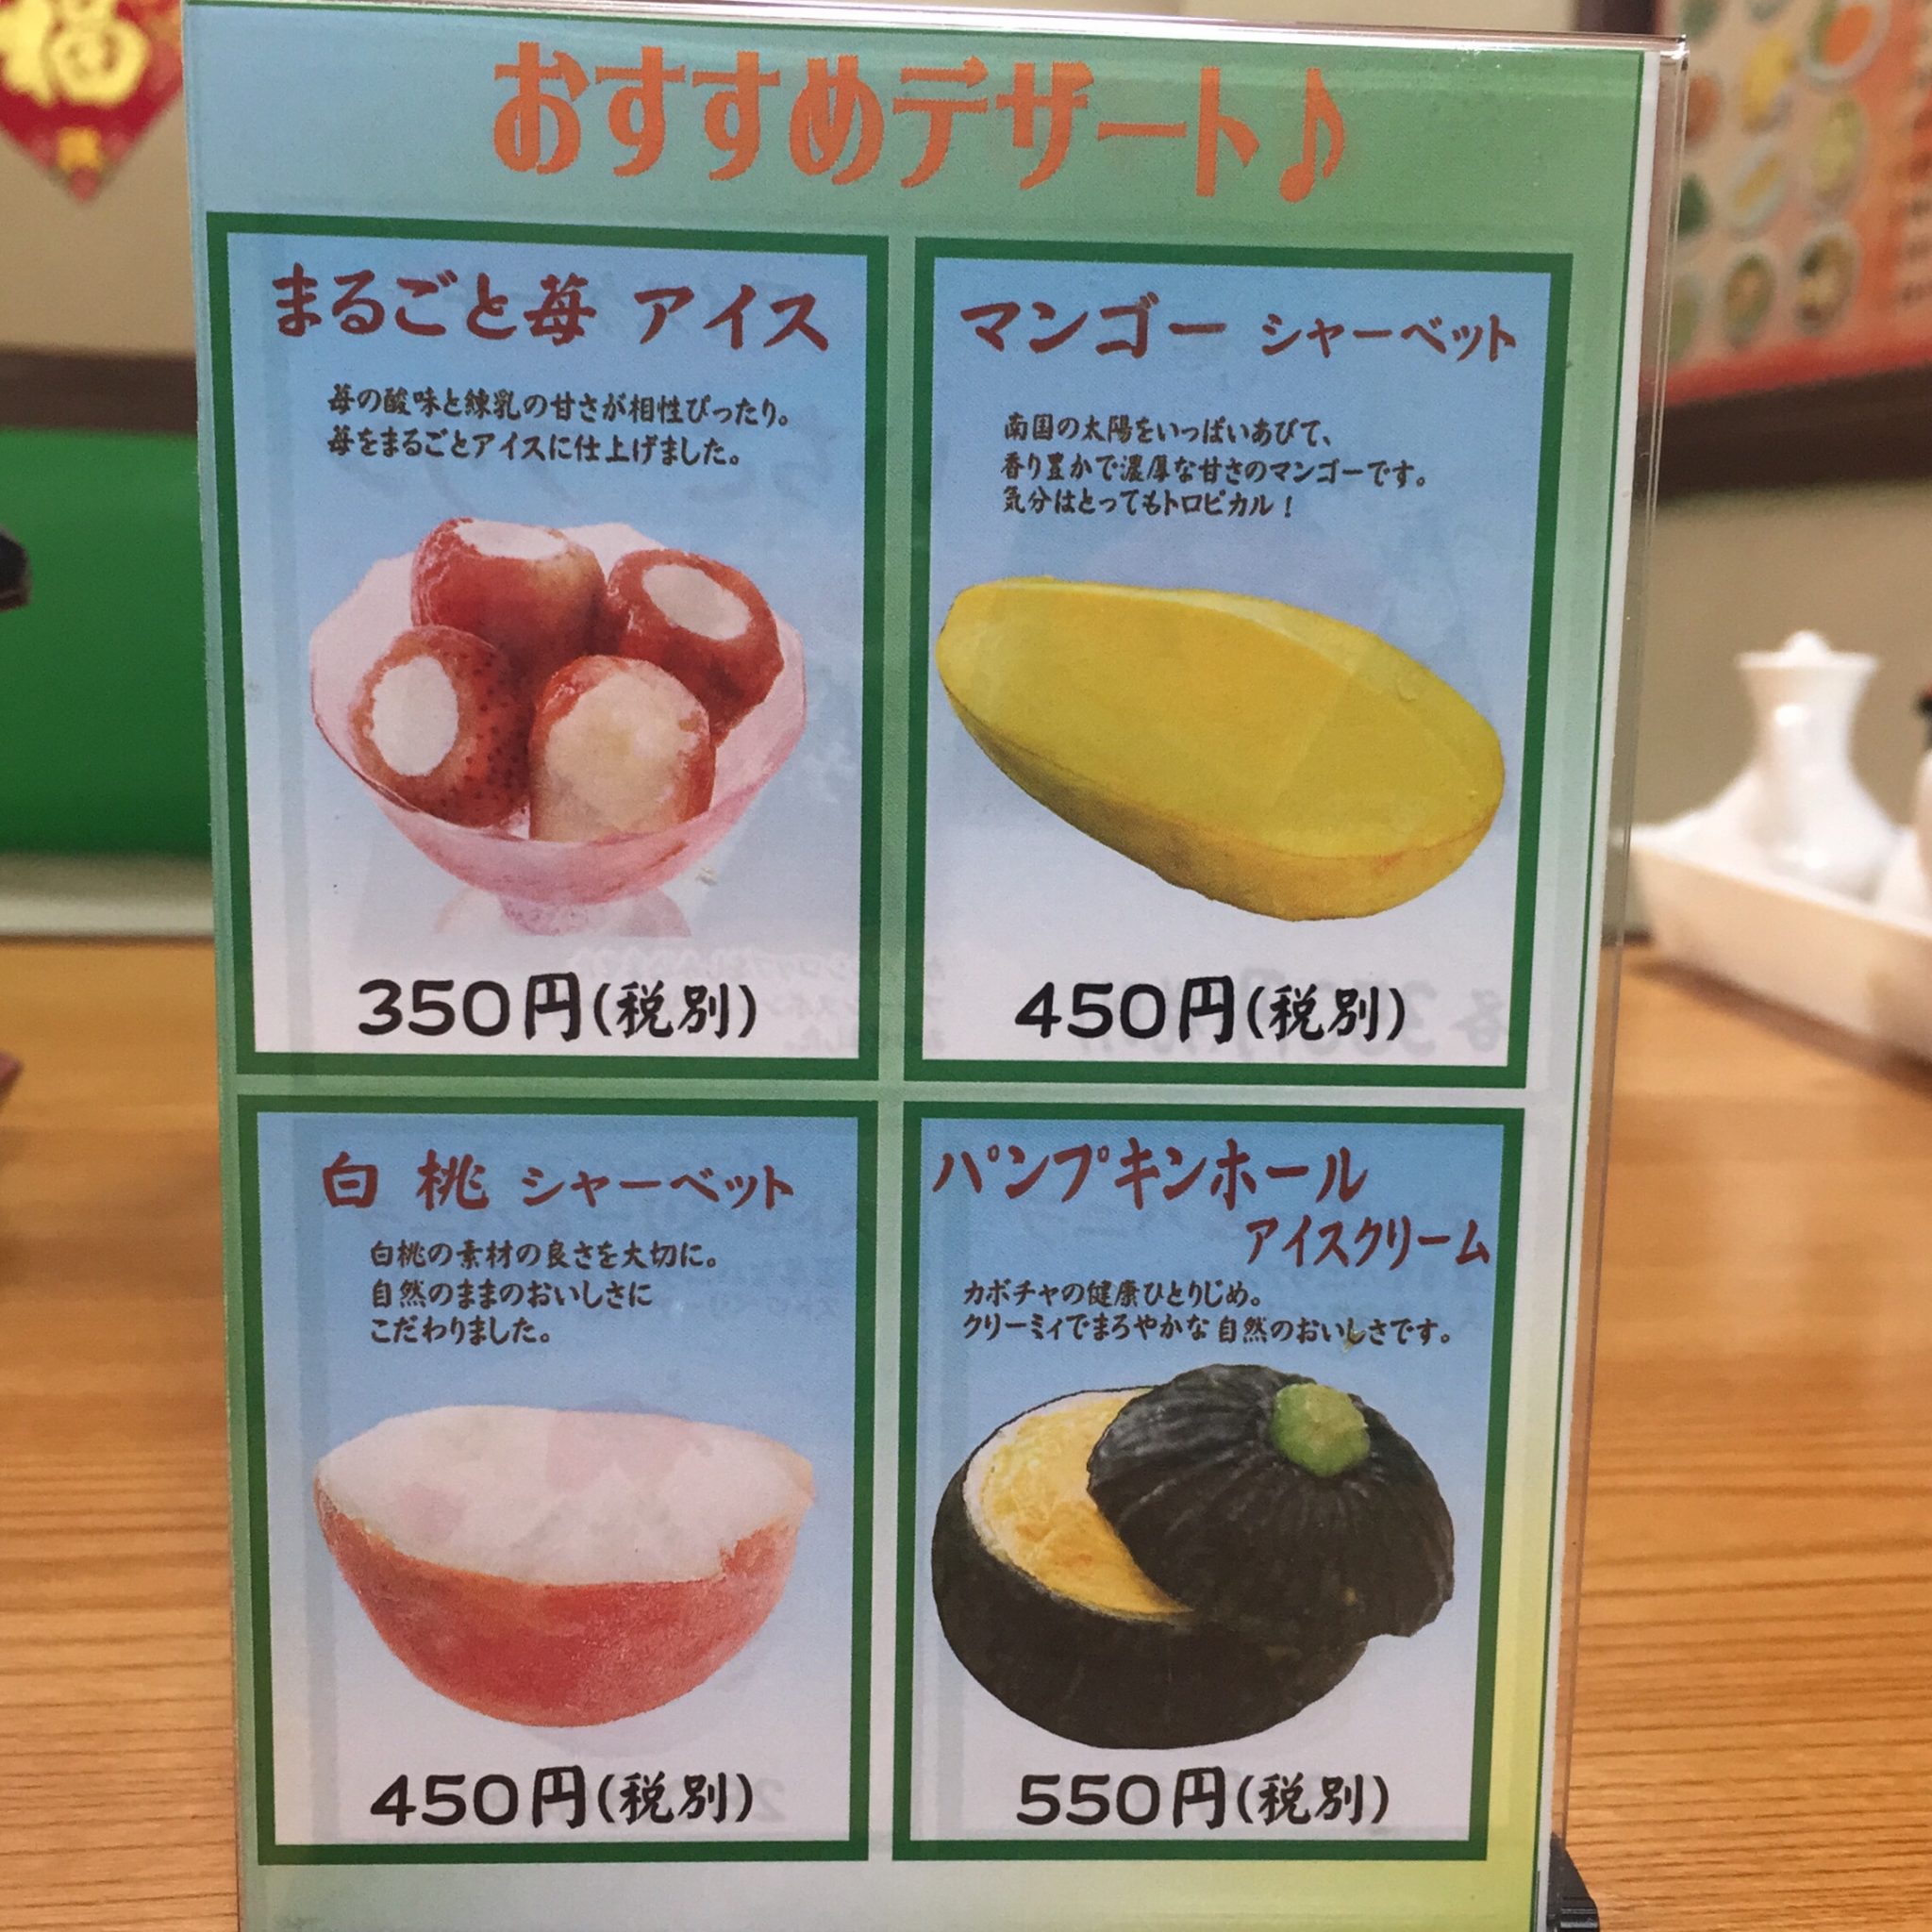 台湾料理 美味鮮 横手店 メニュー